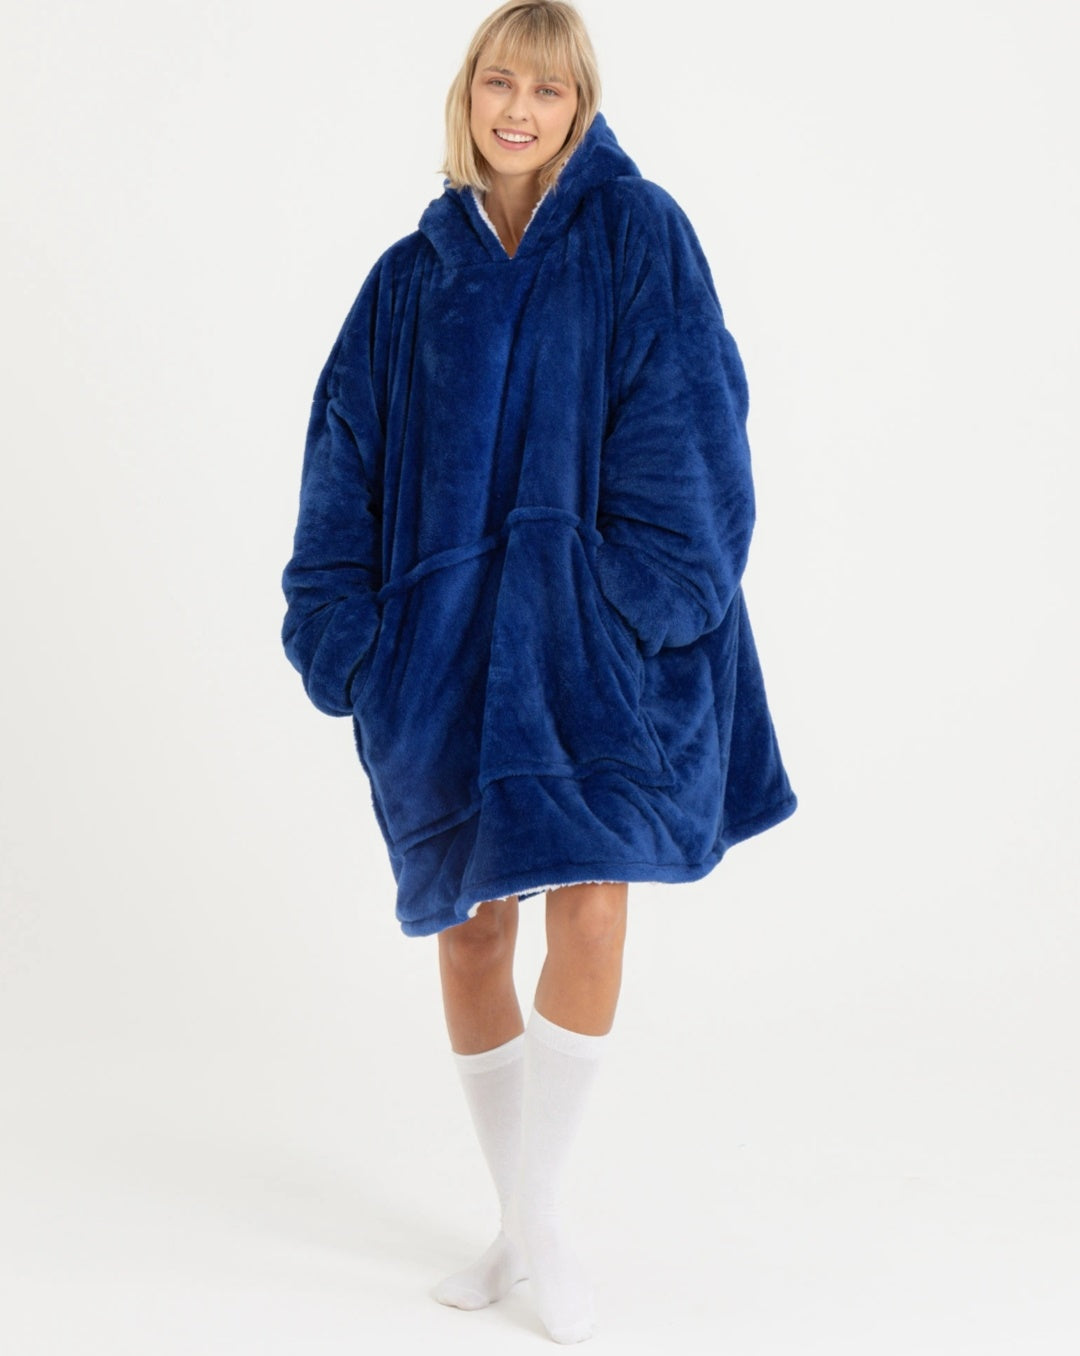 Winter Warm Soft Velour Hoodie Blanket Pocket Big Soft Robe Bathrobe Sweatshirt Pullover